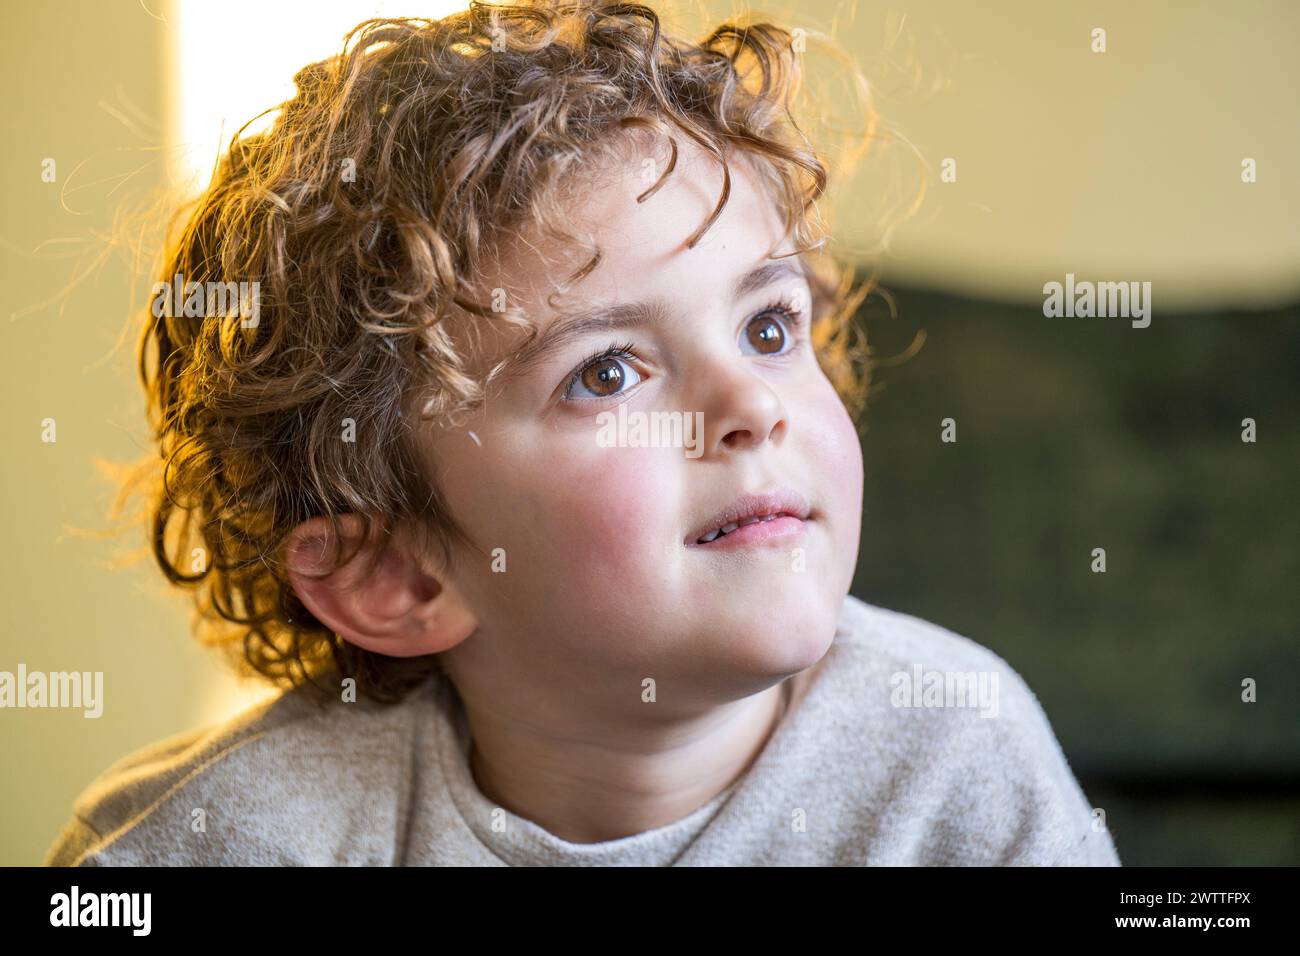 Neugieriges Kind, das mit einem Gefühl des Staunens auf das Licht blickt Stockfoto